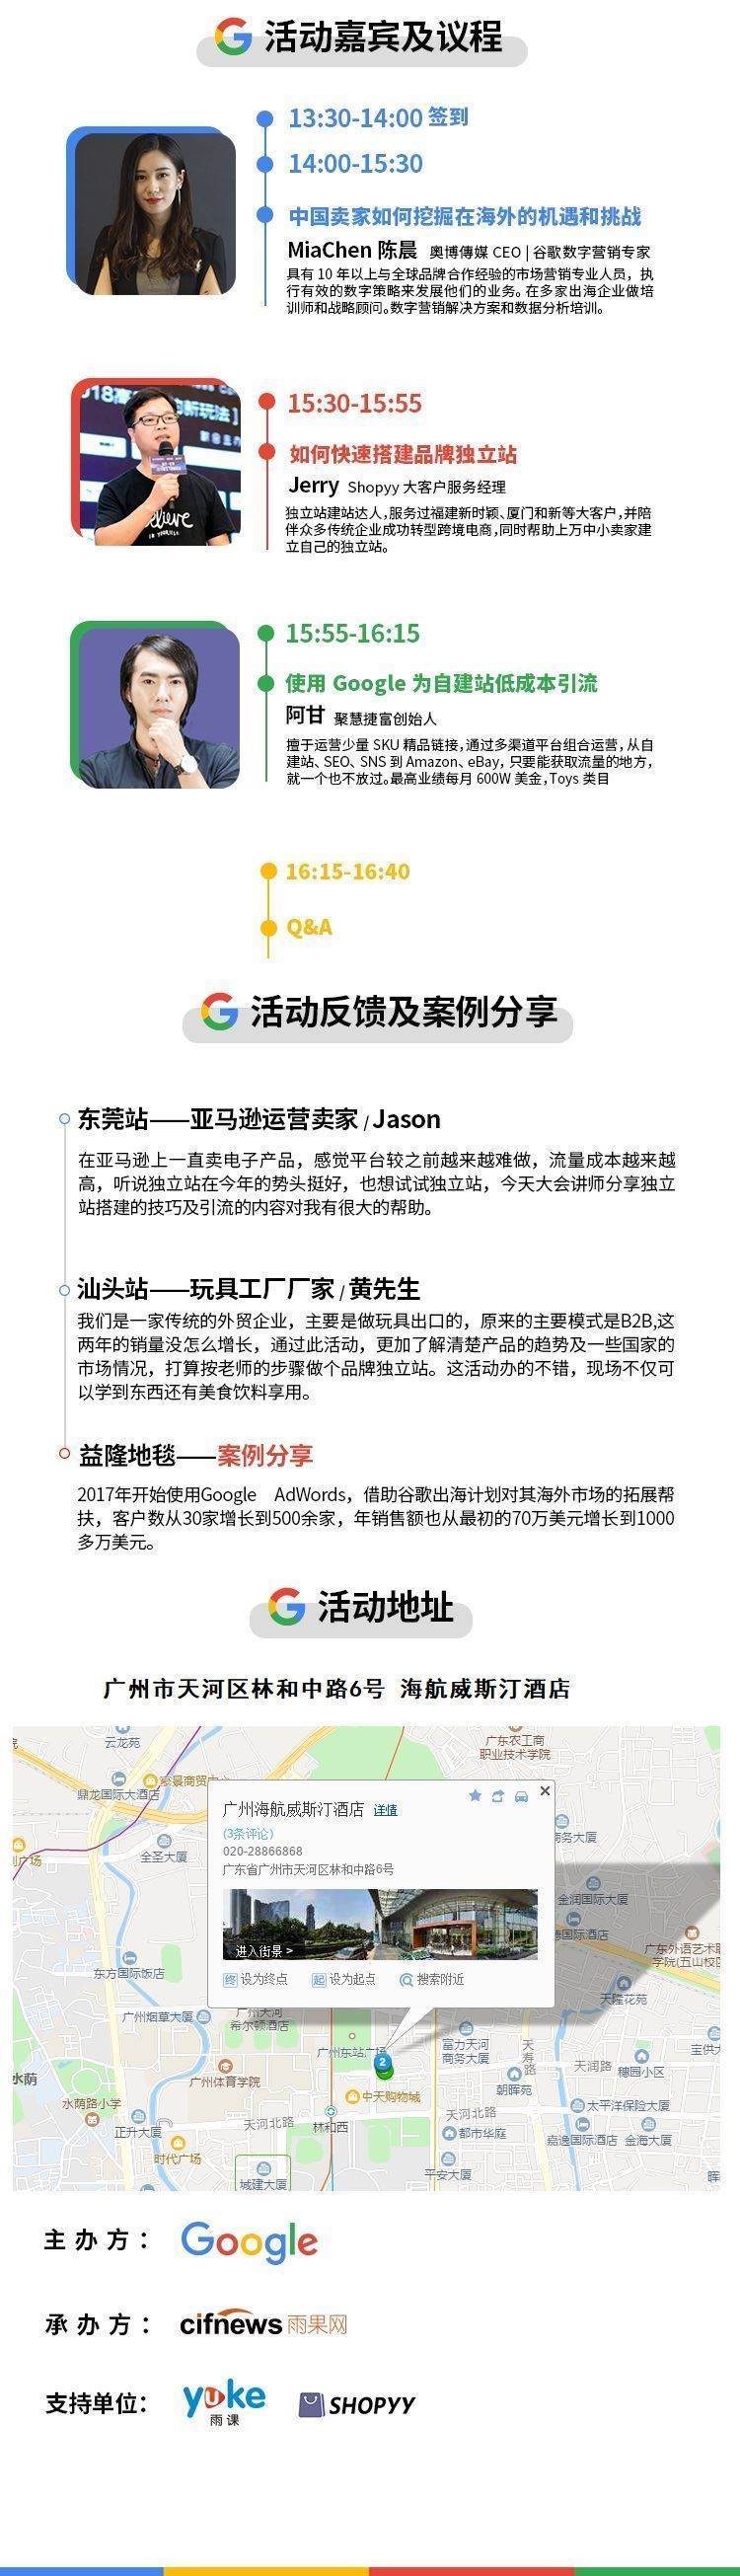 谷歌长图-广州6.19.jpg